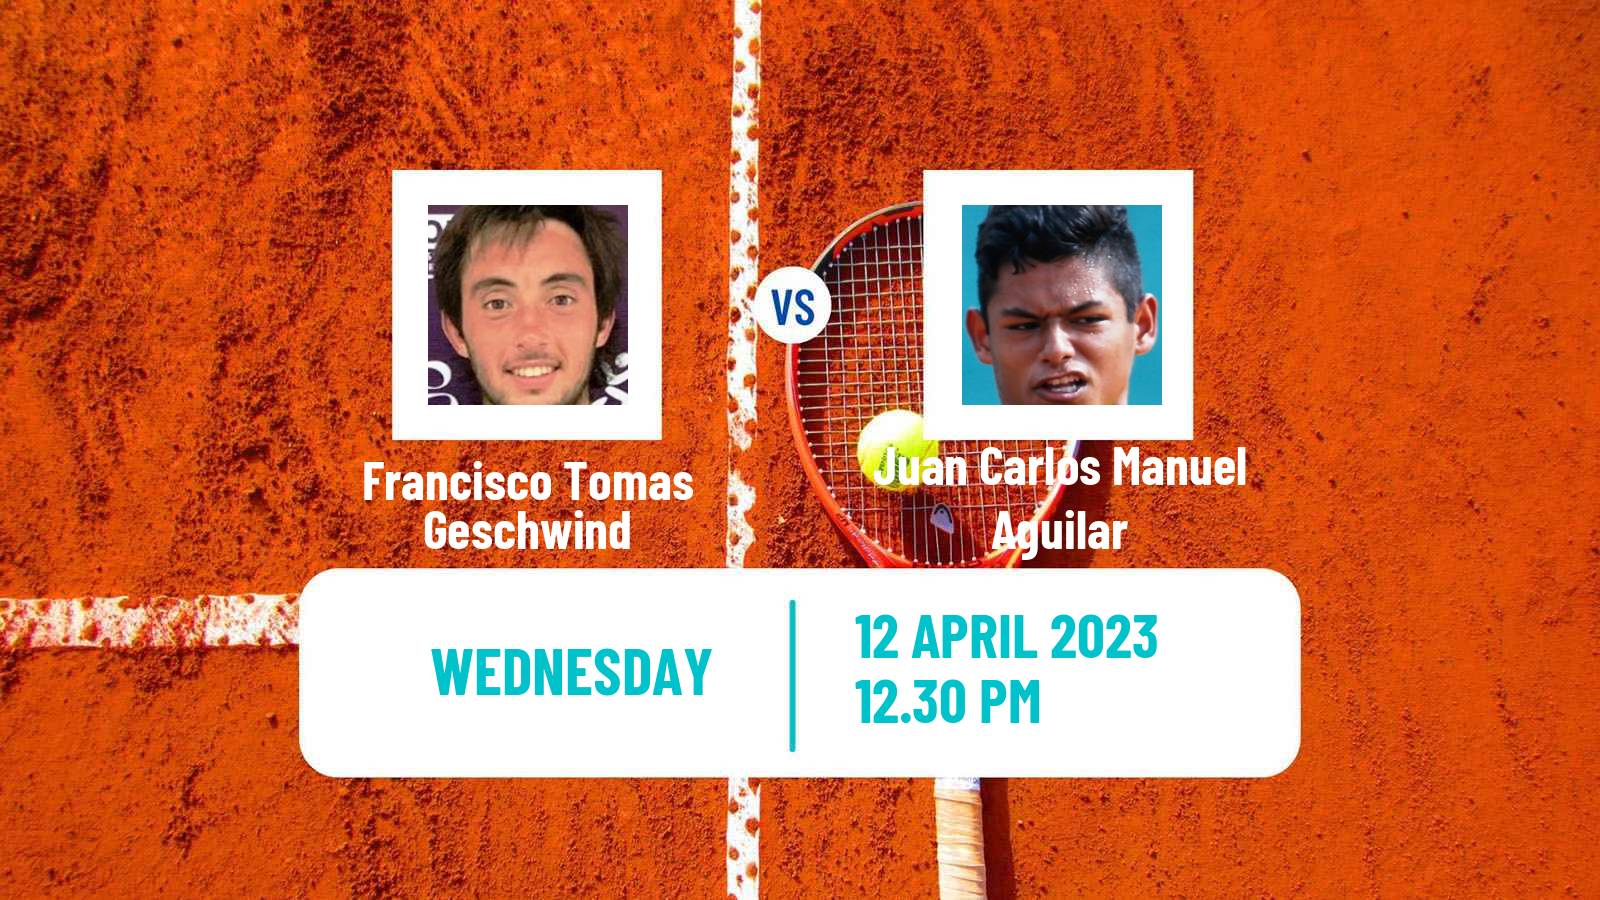 Tennis ITF Tournaments Francisco Tomas Geschwind - Juan Carlos Manuel Aguilar